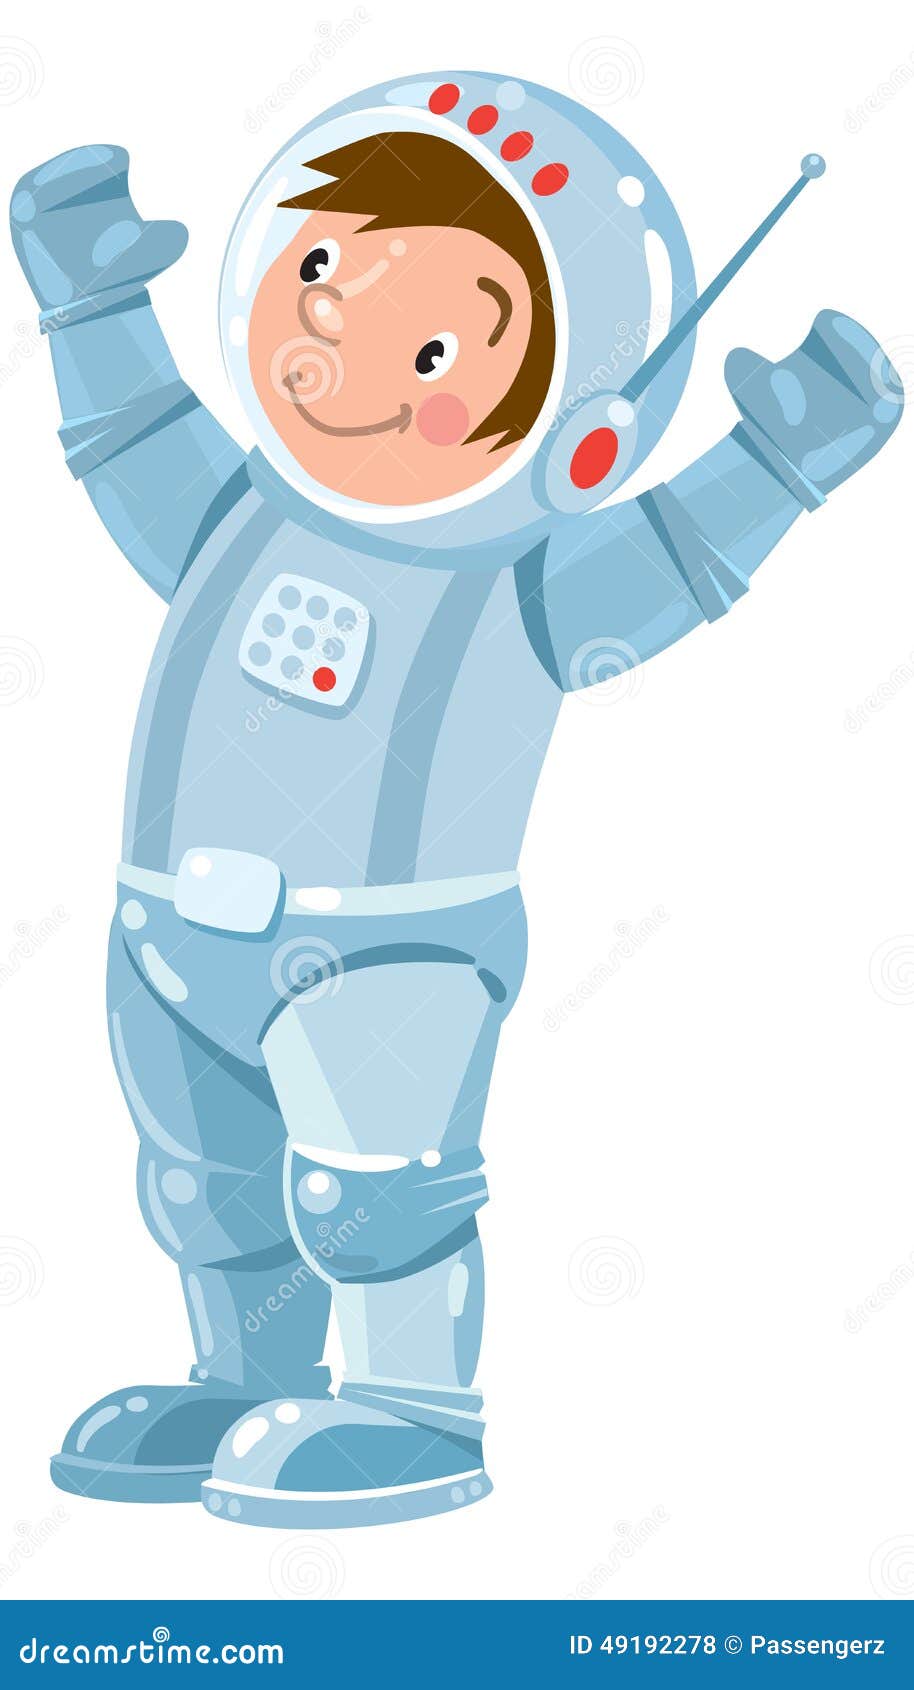 funny boy cosmonaut or astronaut